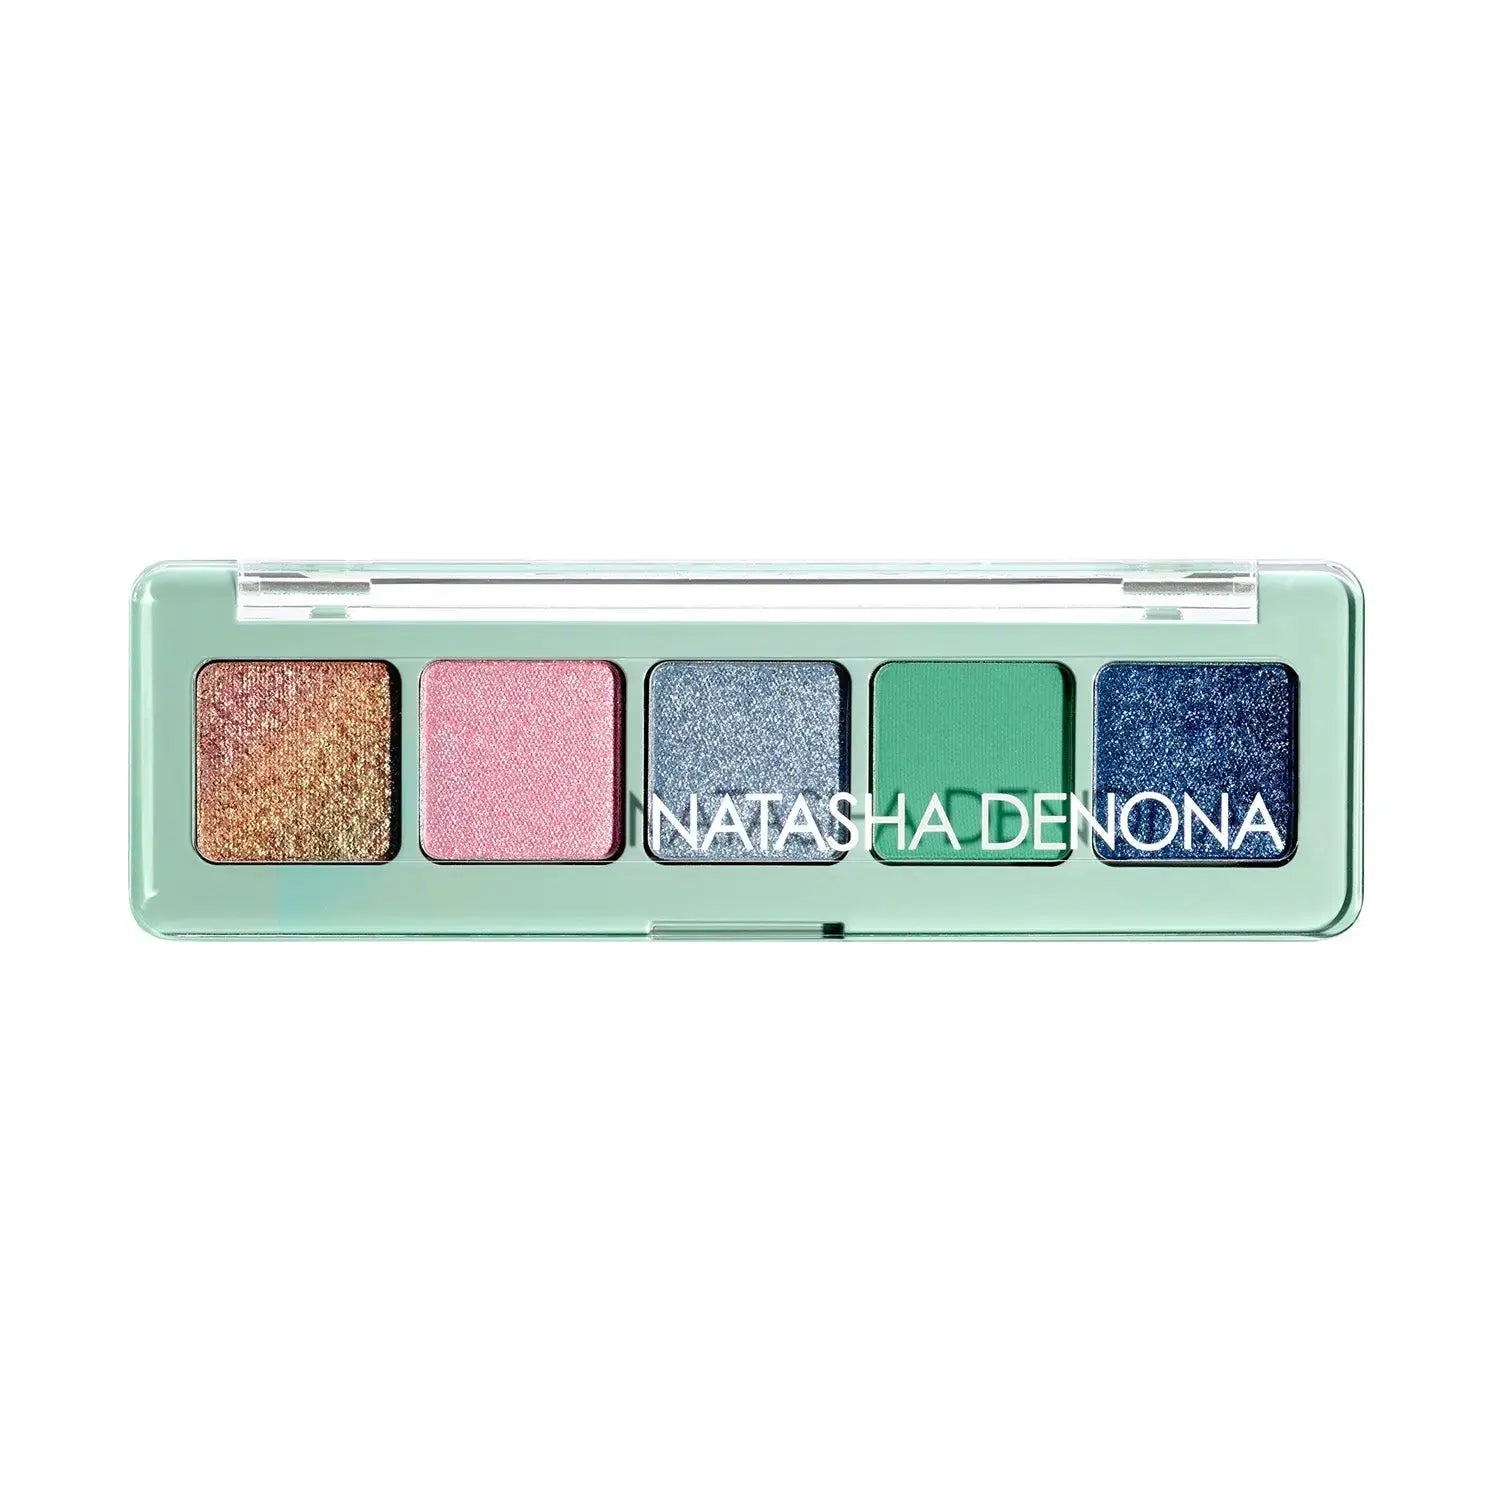 Mini Pastel Eyeshadow Palette - פלטת צלליות לעיניים מיני פסטל Natasha Denona